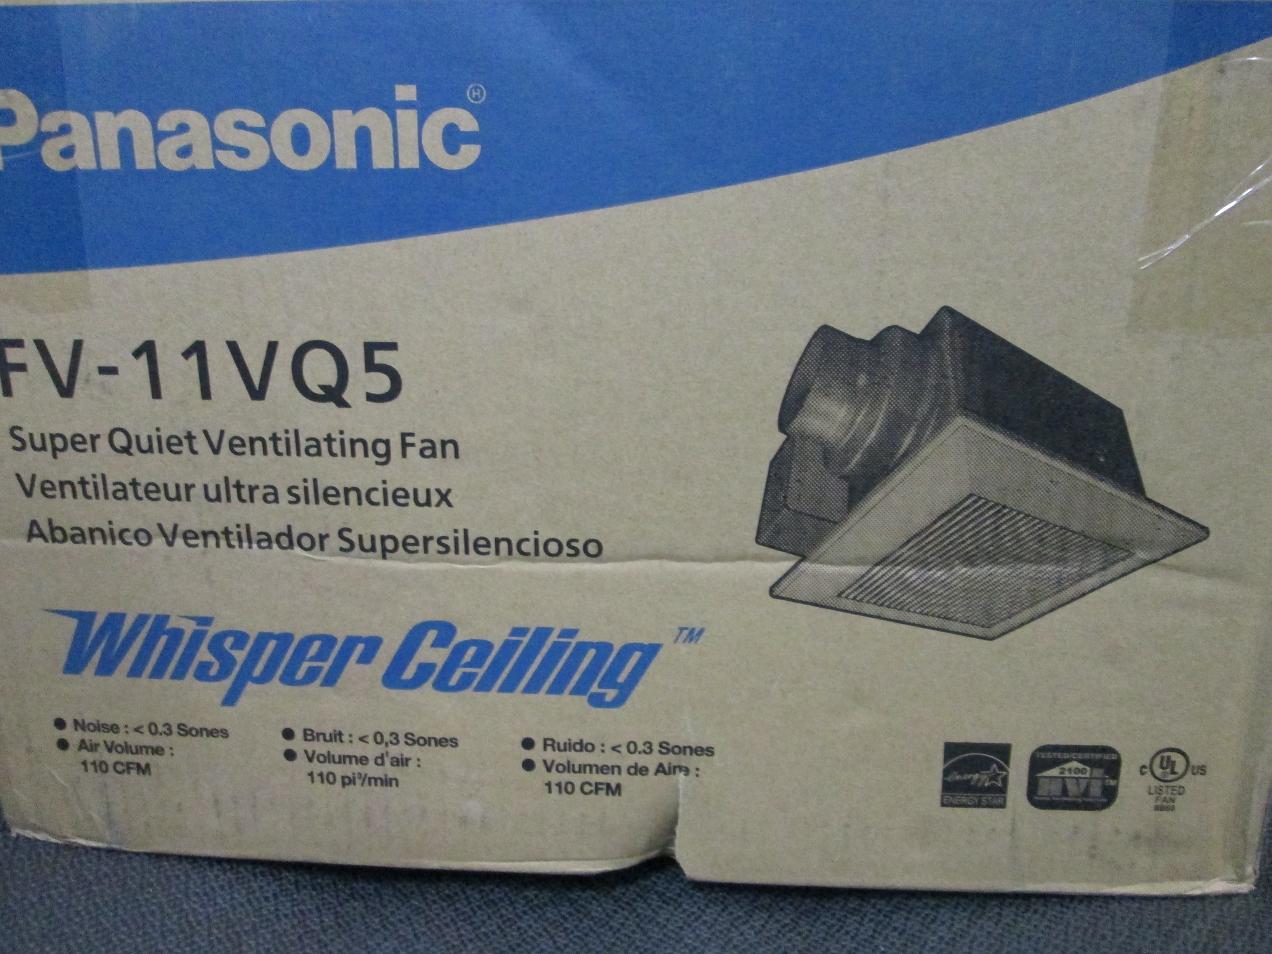 Panasonic FV-11VQ5 WhisperCeiling 110 CFM Ceiling Mounted ...